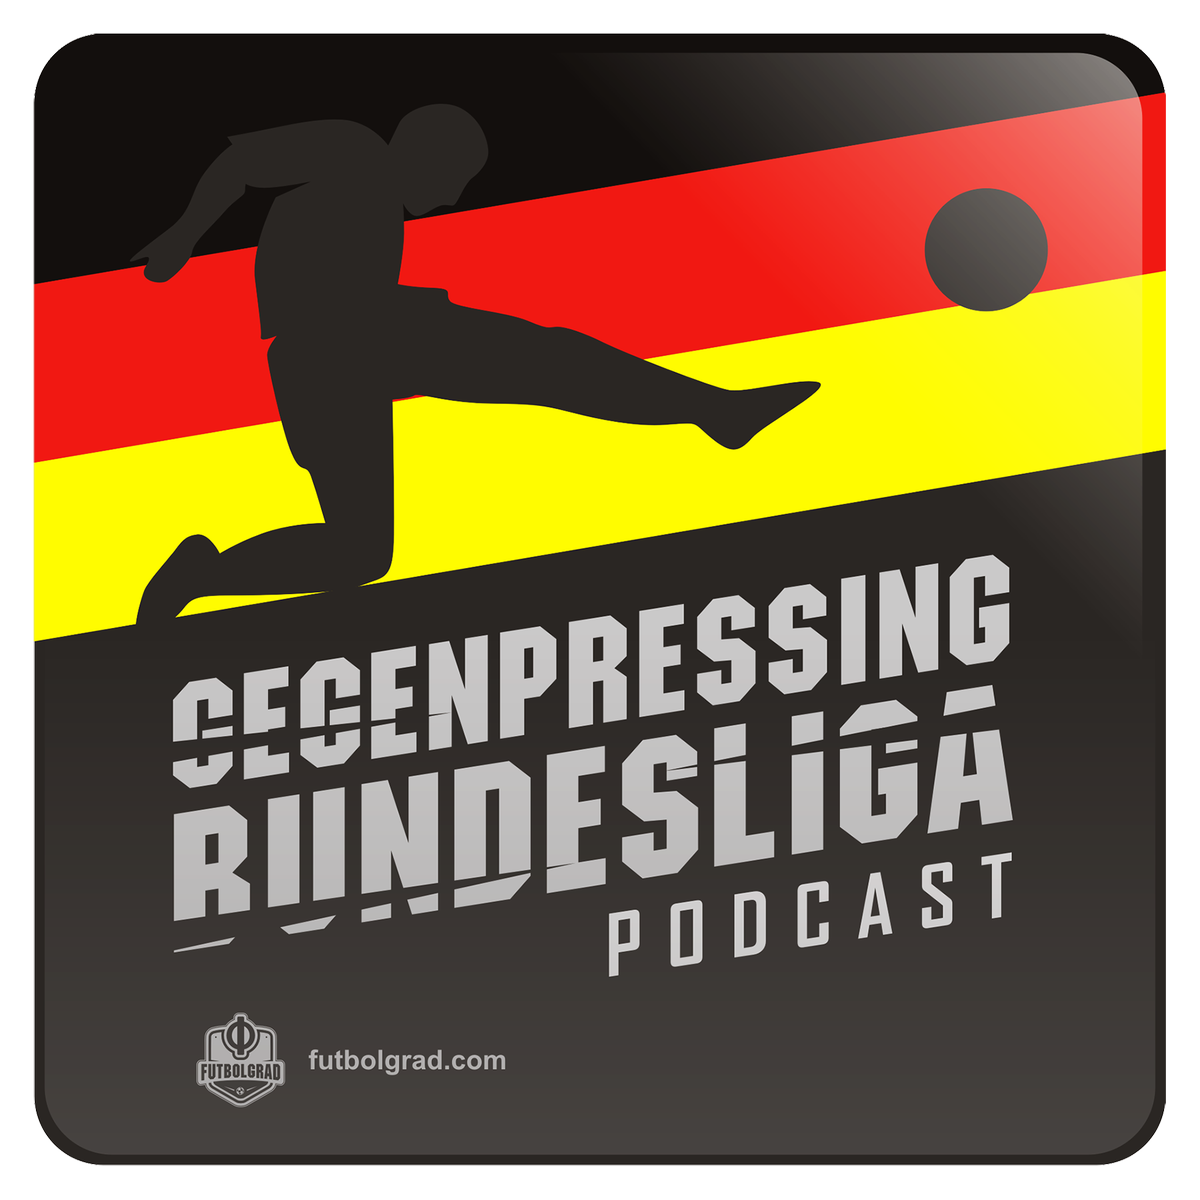 Gegenpressing – Bundesliga Podcast – The Erling Haaland Show Has Arrived